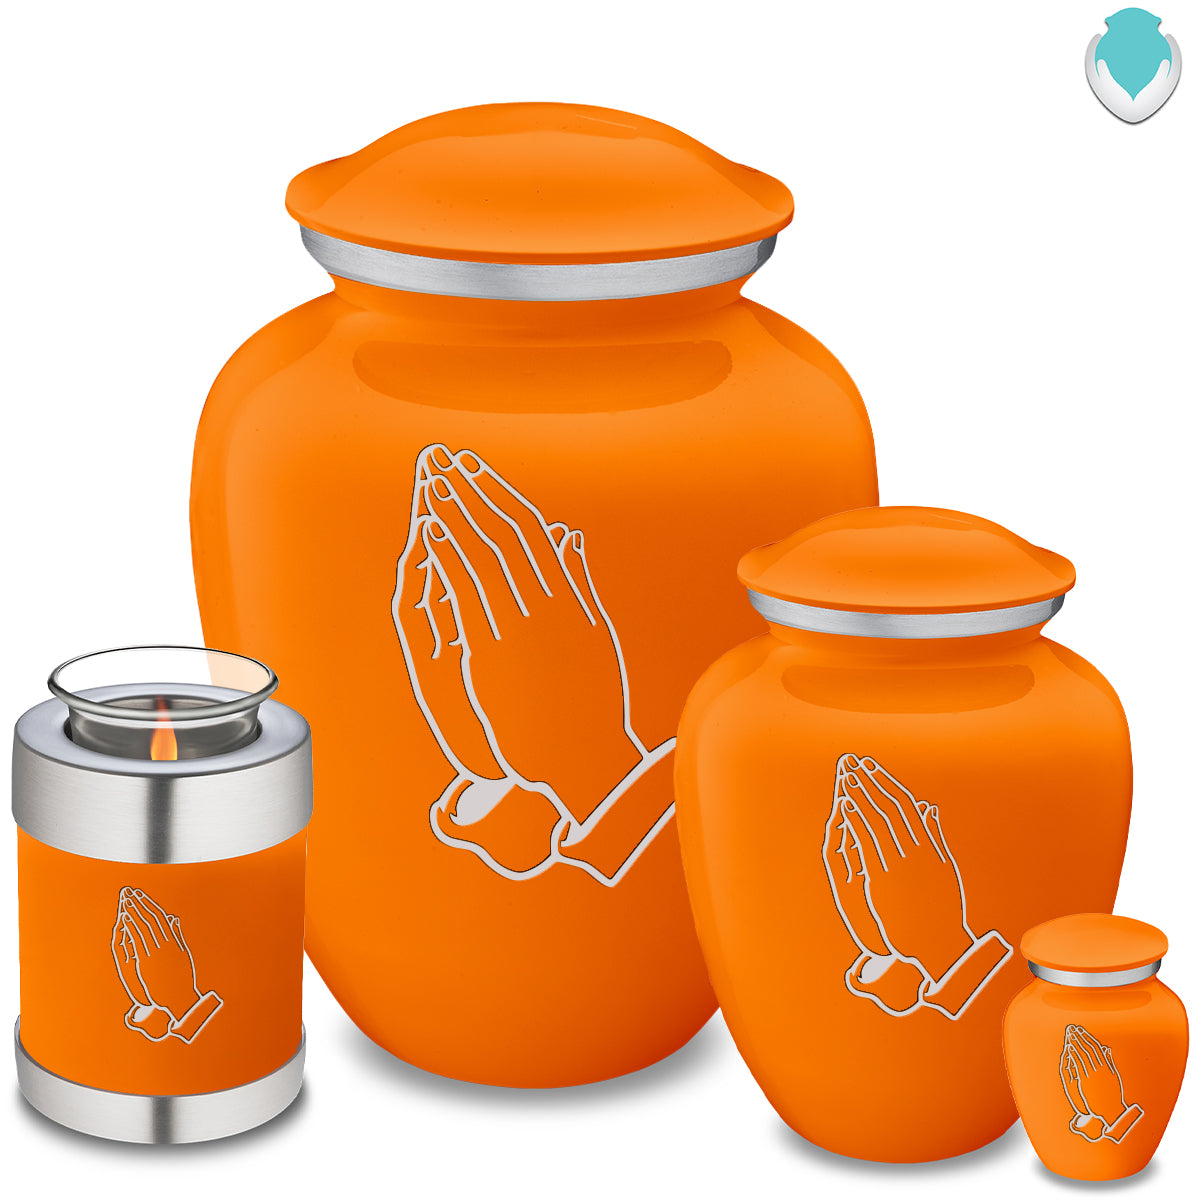 Adult Embrace Burnt Orange Praying Hands Cremation Urn